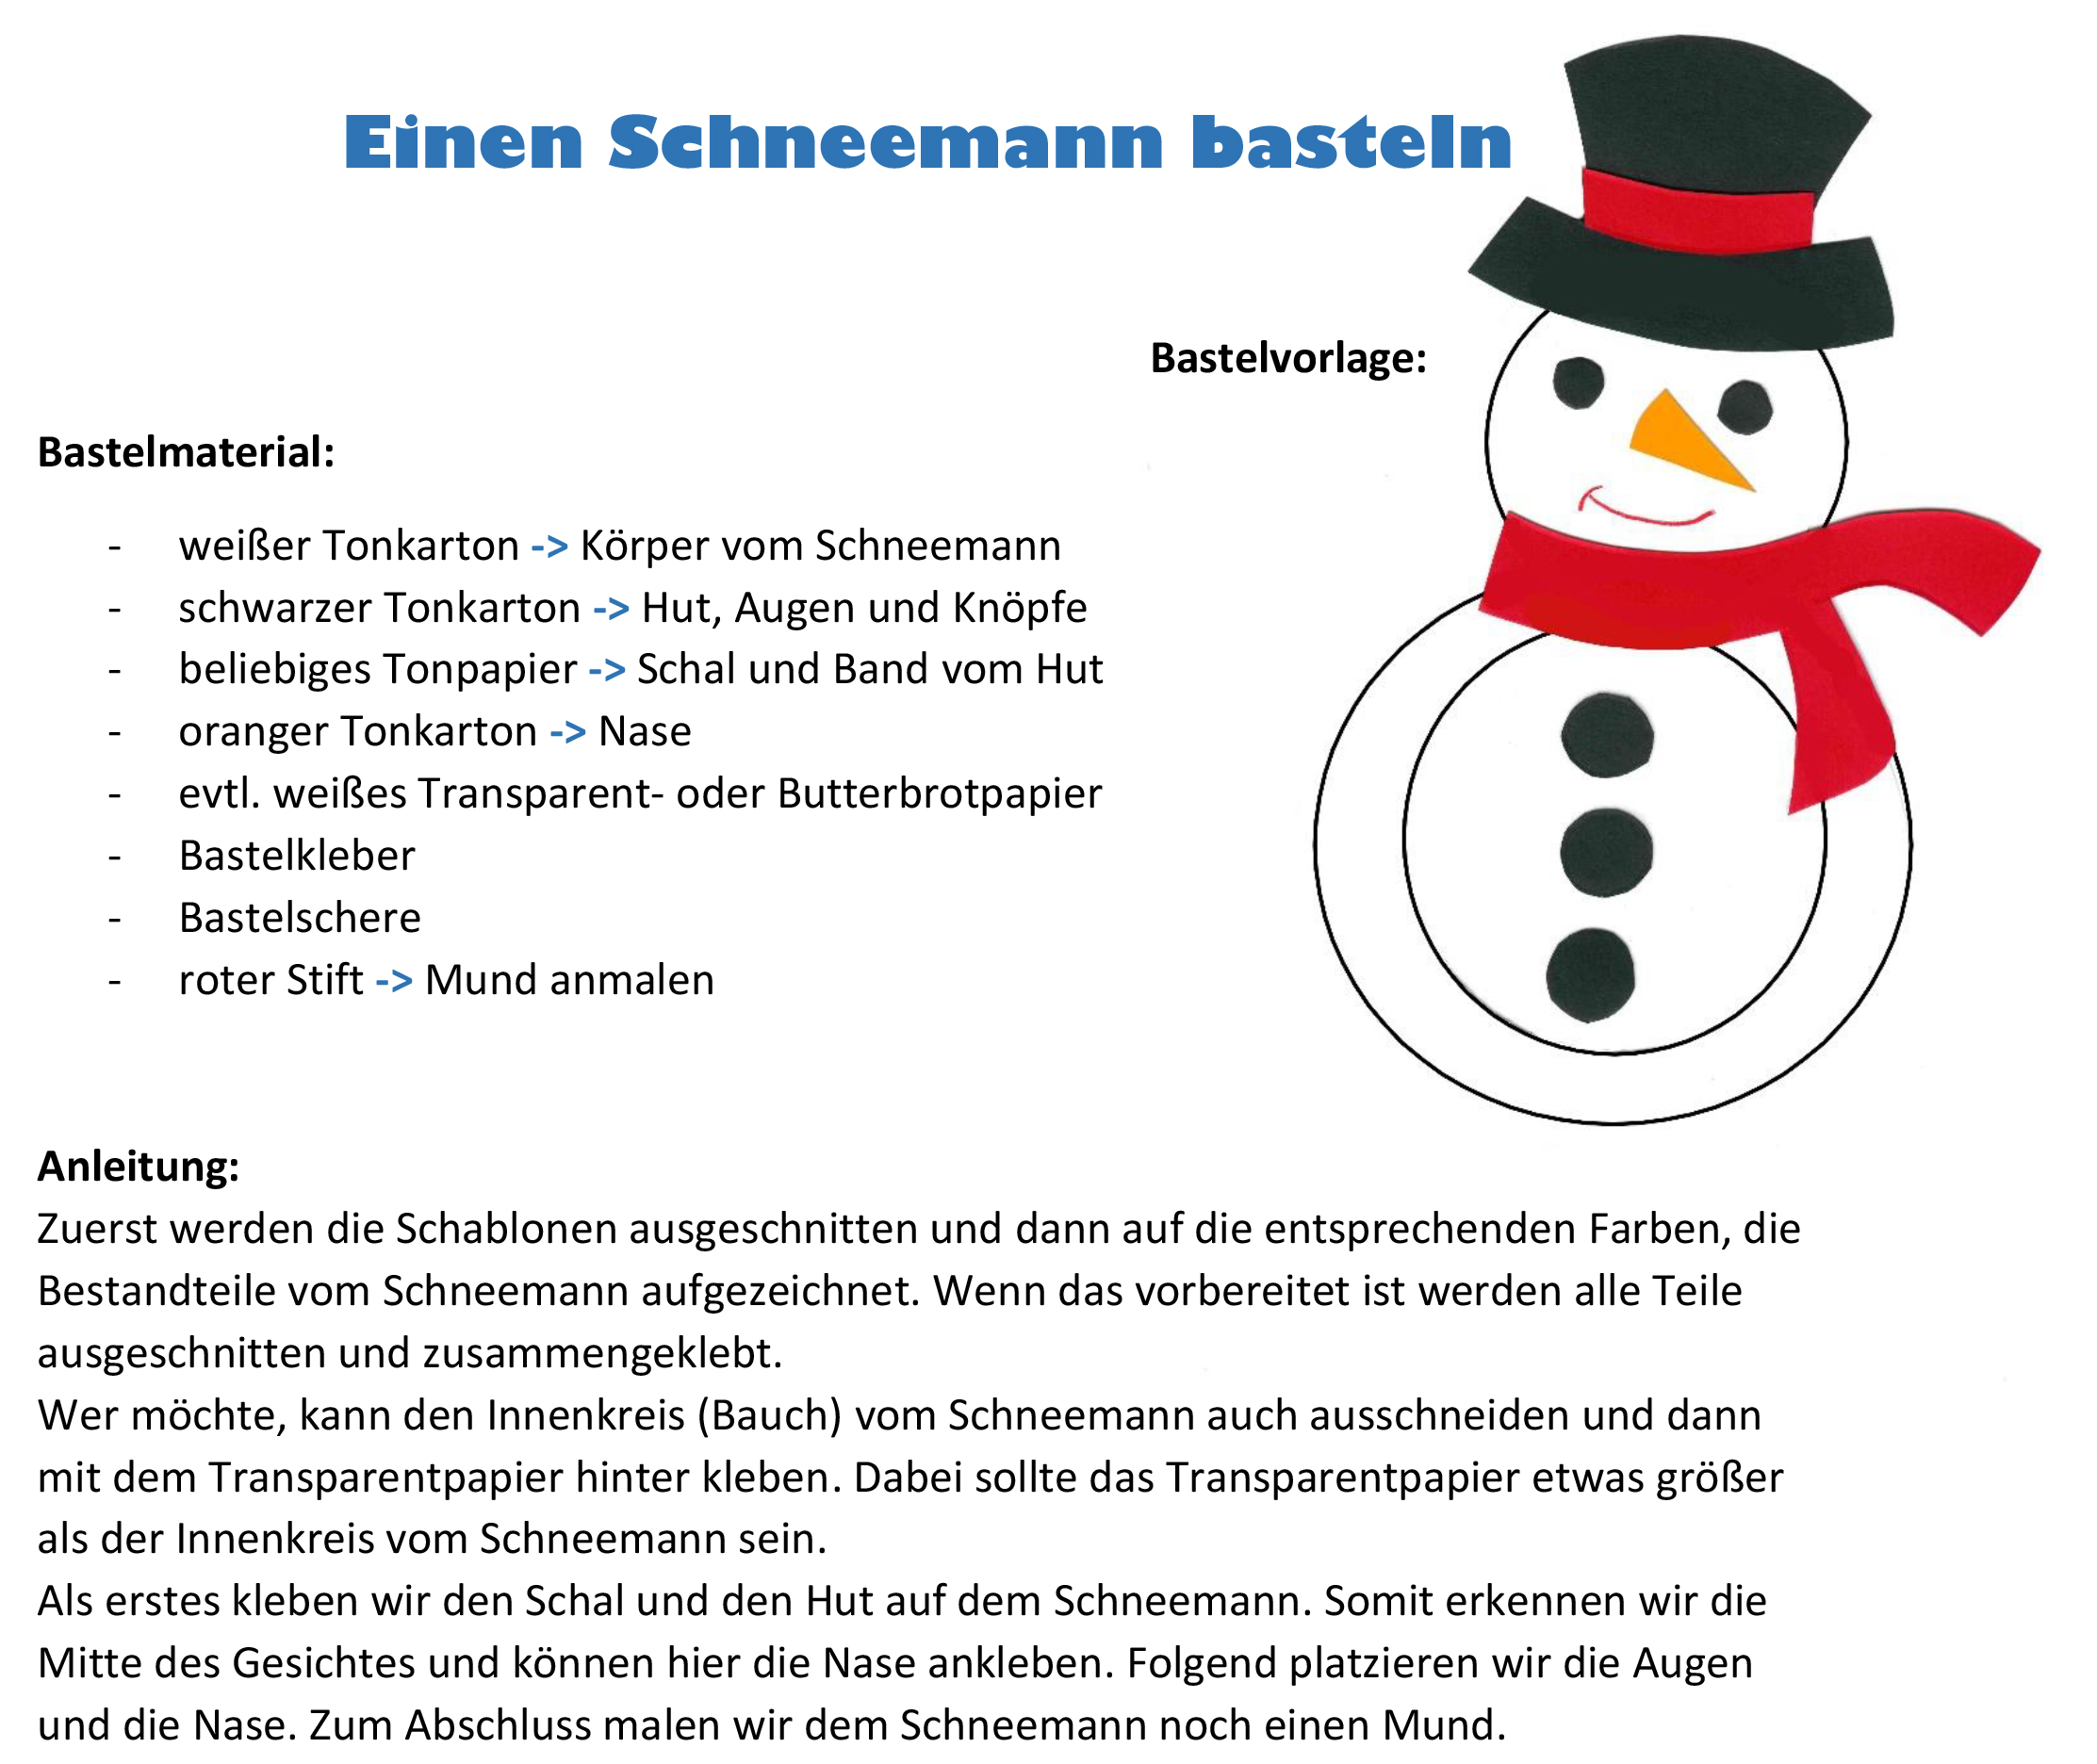 Bastelanleitung (Beschreibung) für einen Schneemann, Teil 1